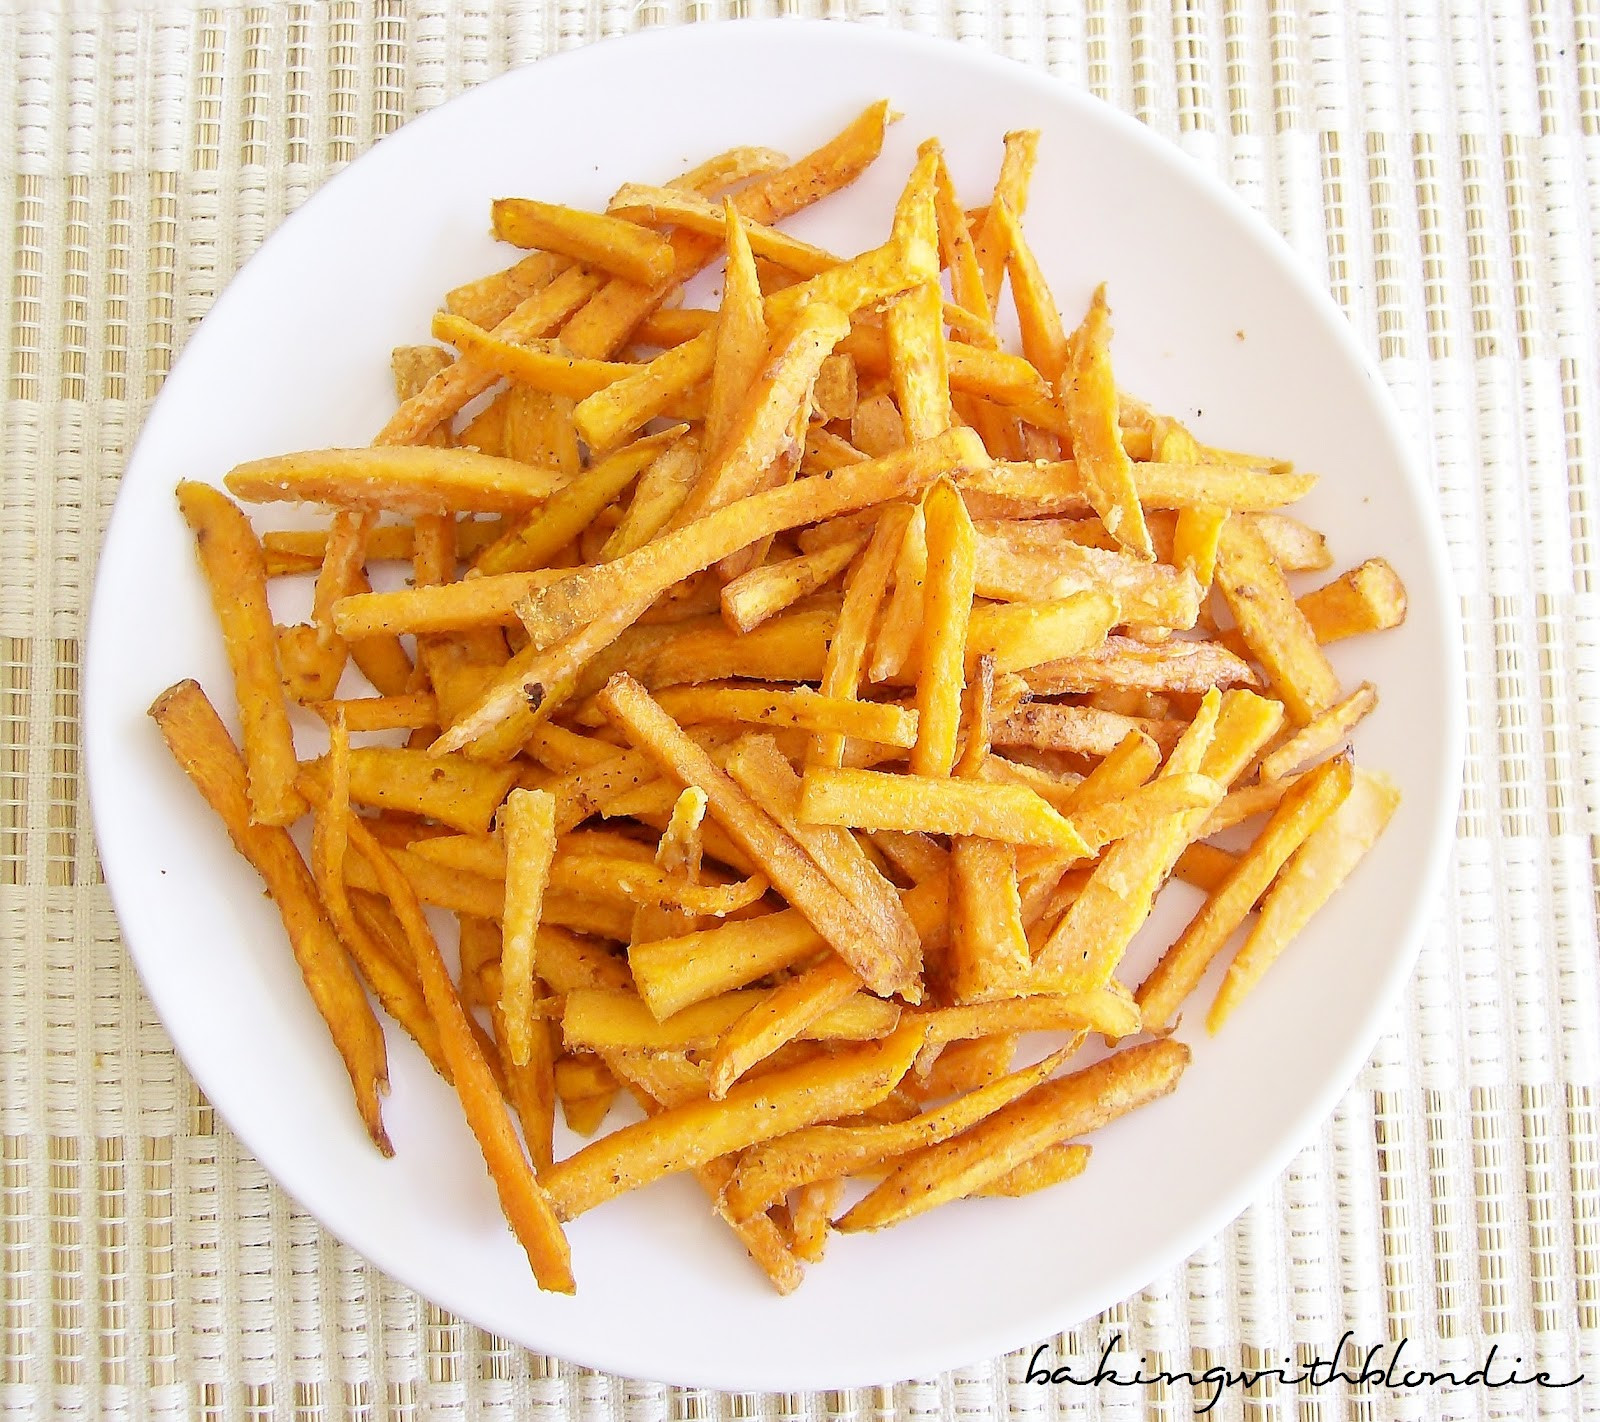 Homemade Sweet Potato Fries
 Homemade Sweet Potato Fries